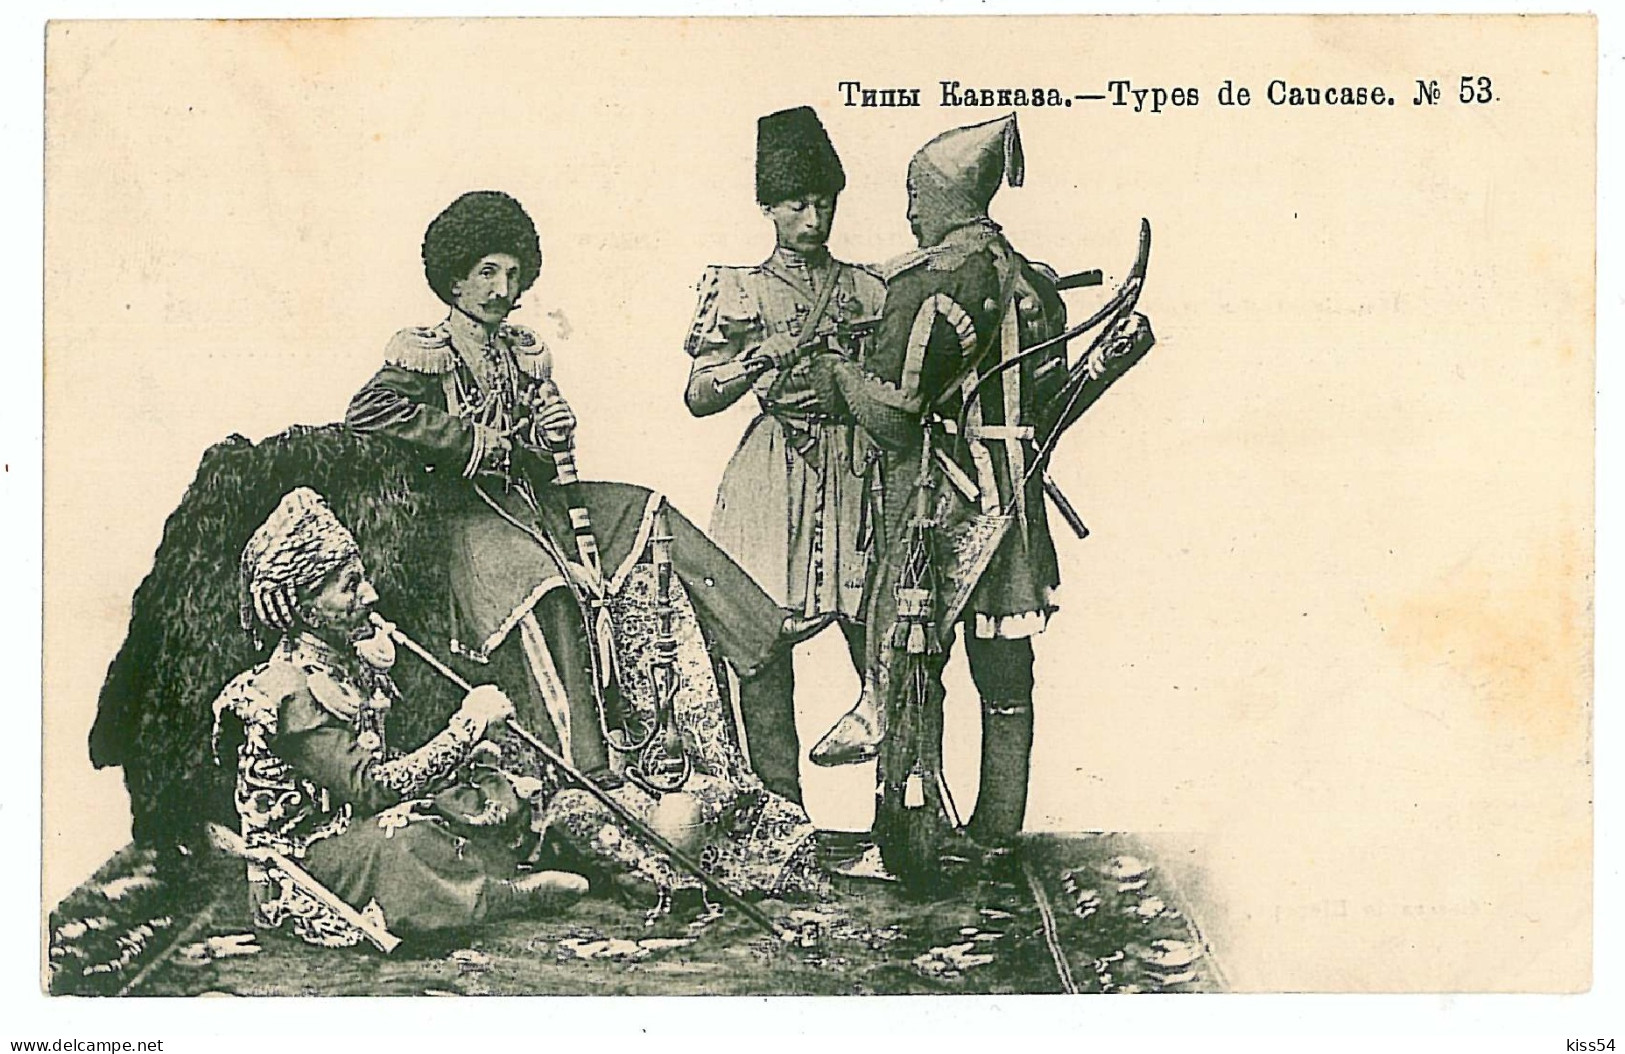 RUS 54 - 8288 ETHNICS From CAUCASSUS, Russia - Old Postcard - Used - 1907 - Rusia